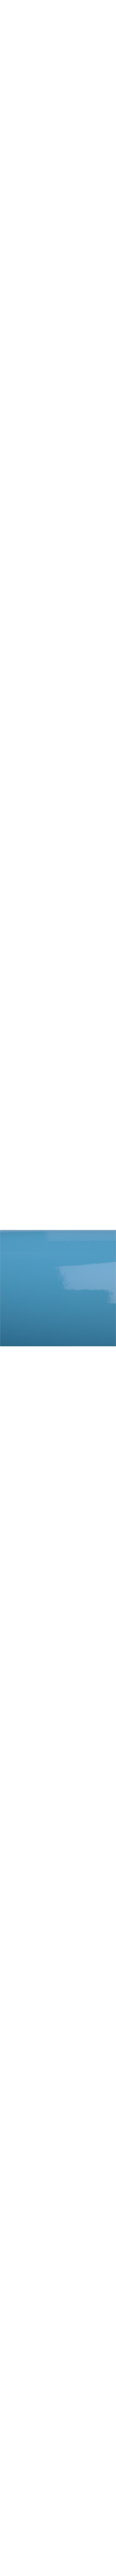 2080-G77 Sky blue en 1.524m x 22.86ml